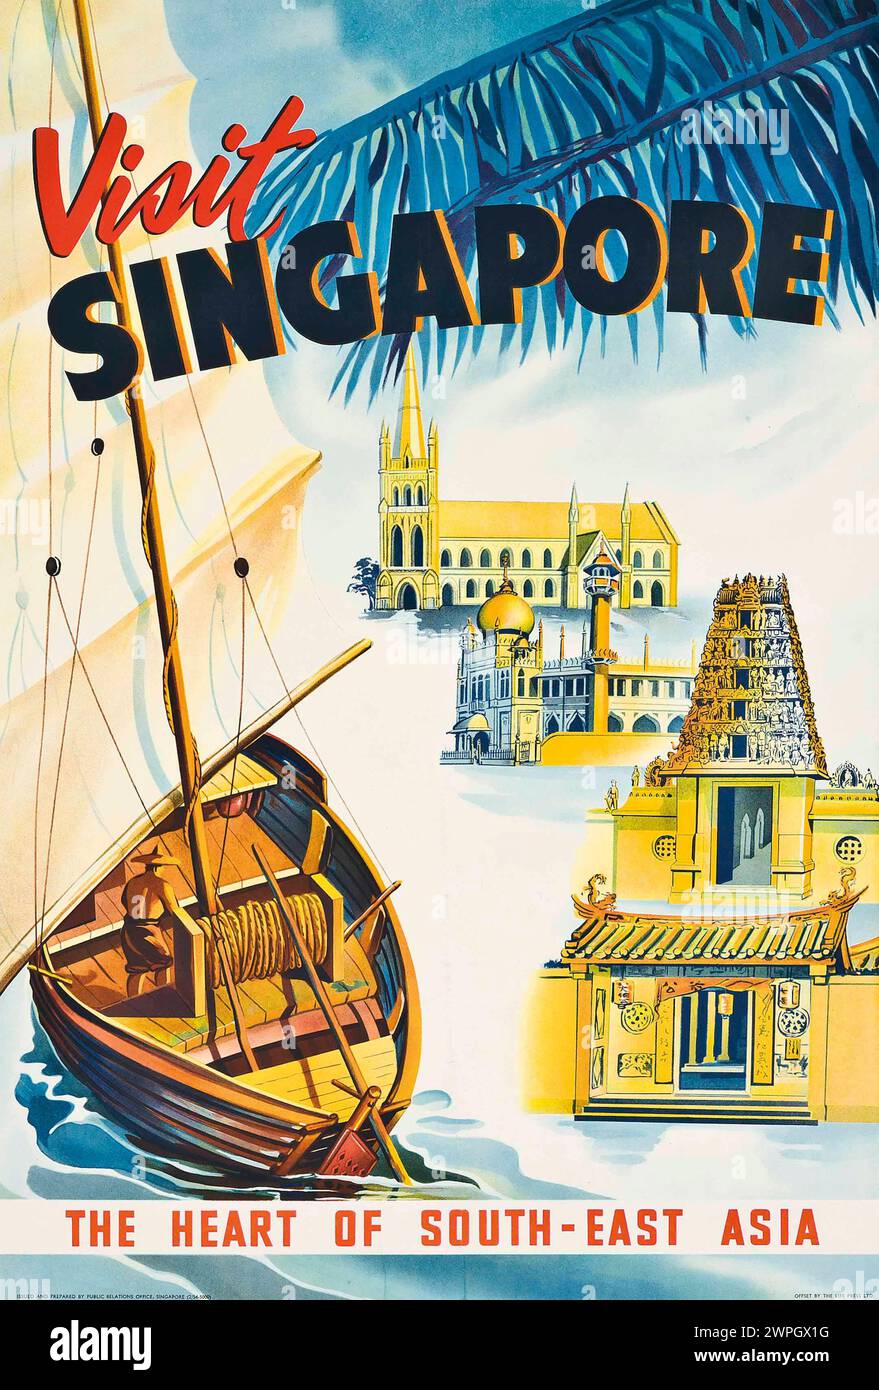 Affiche de voyage vintage pour visiter Singapour par les années 1950 Banque D'Images